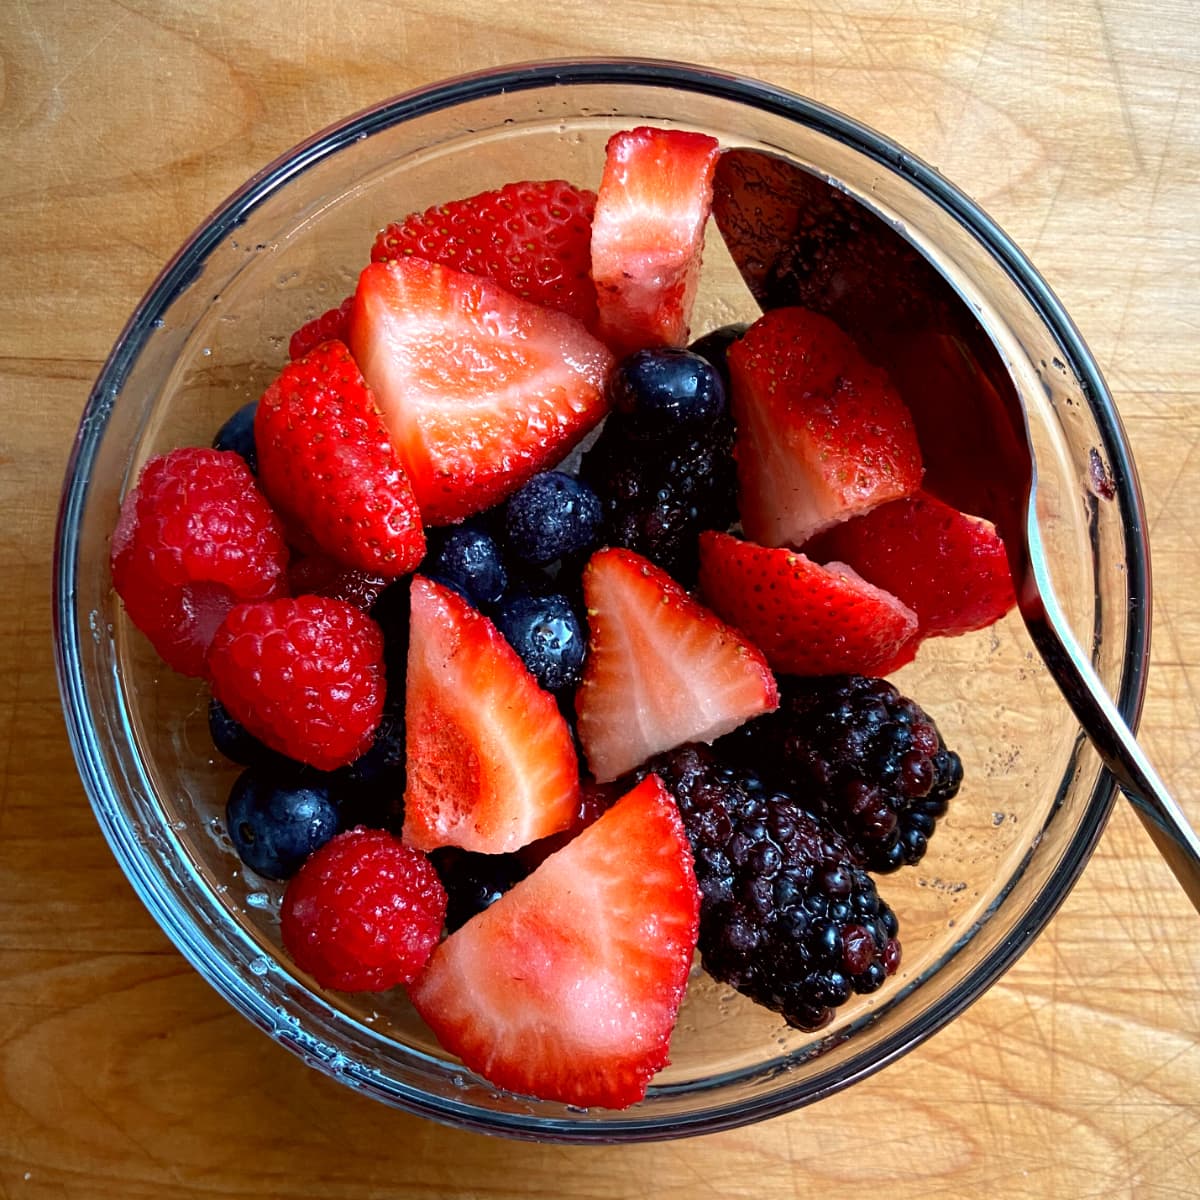 macerated berries